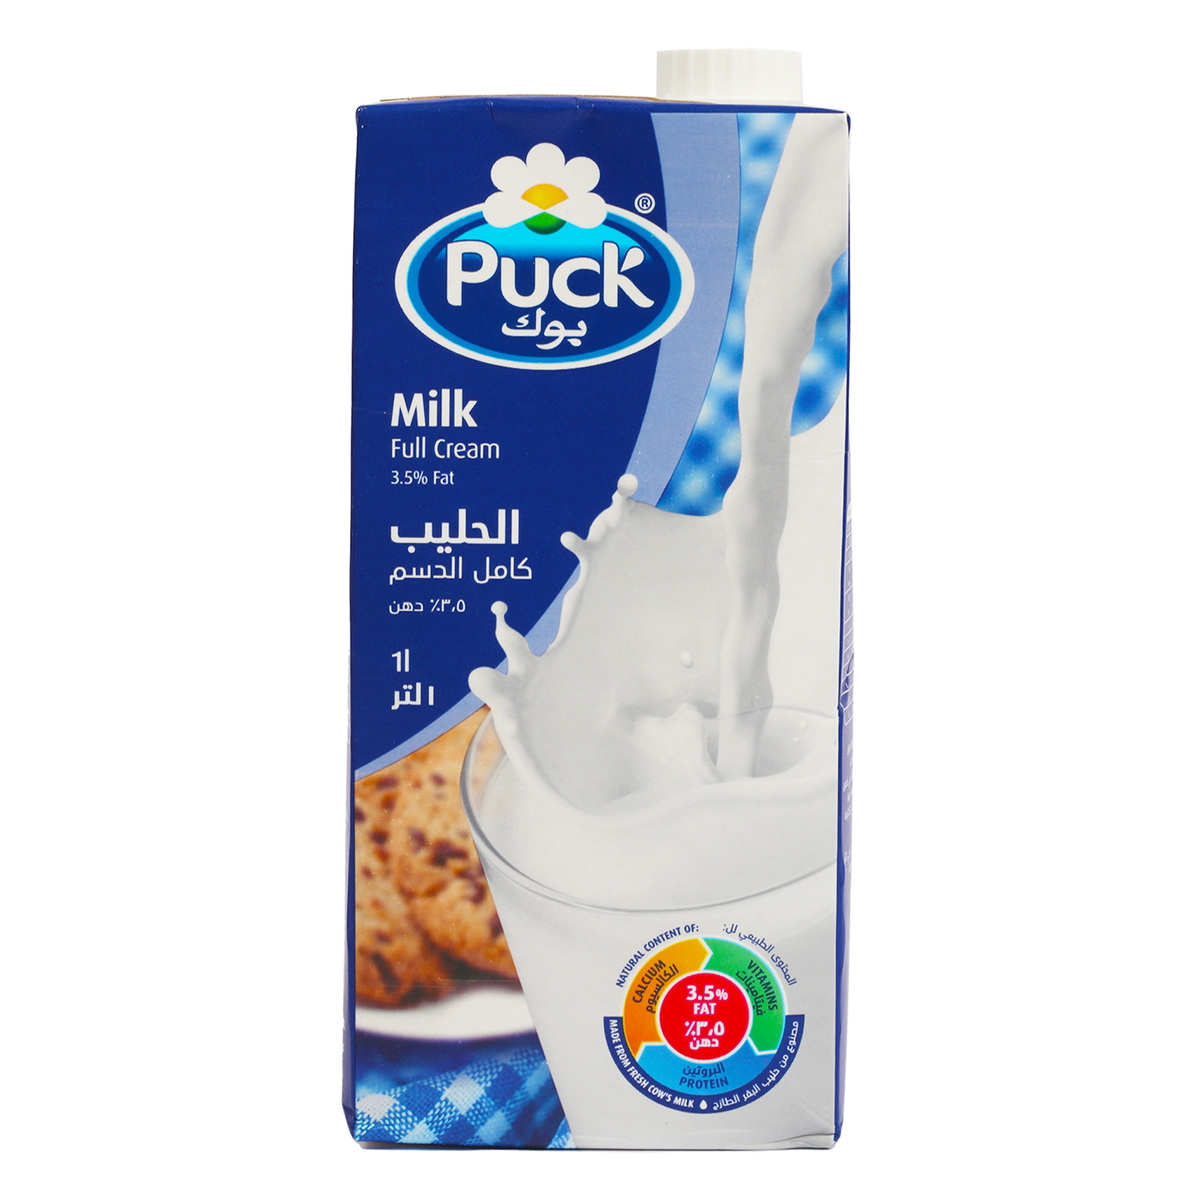 Puck UHT Milk Full Cream 4 x 1 Litre